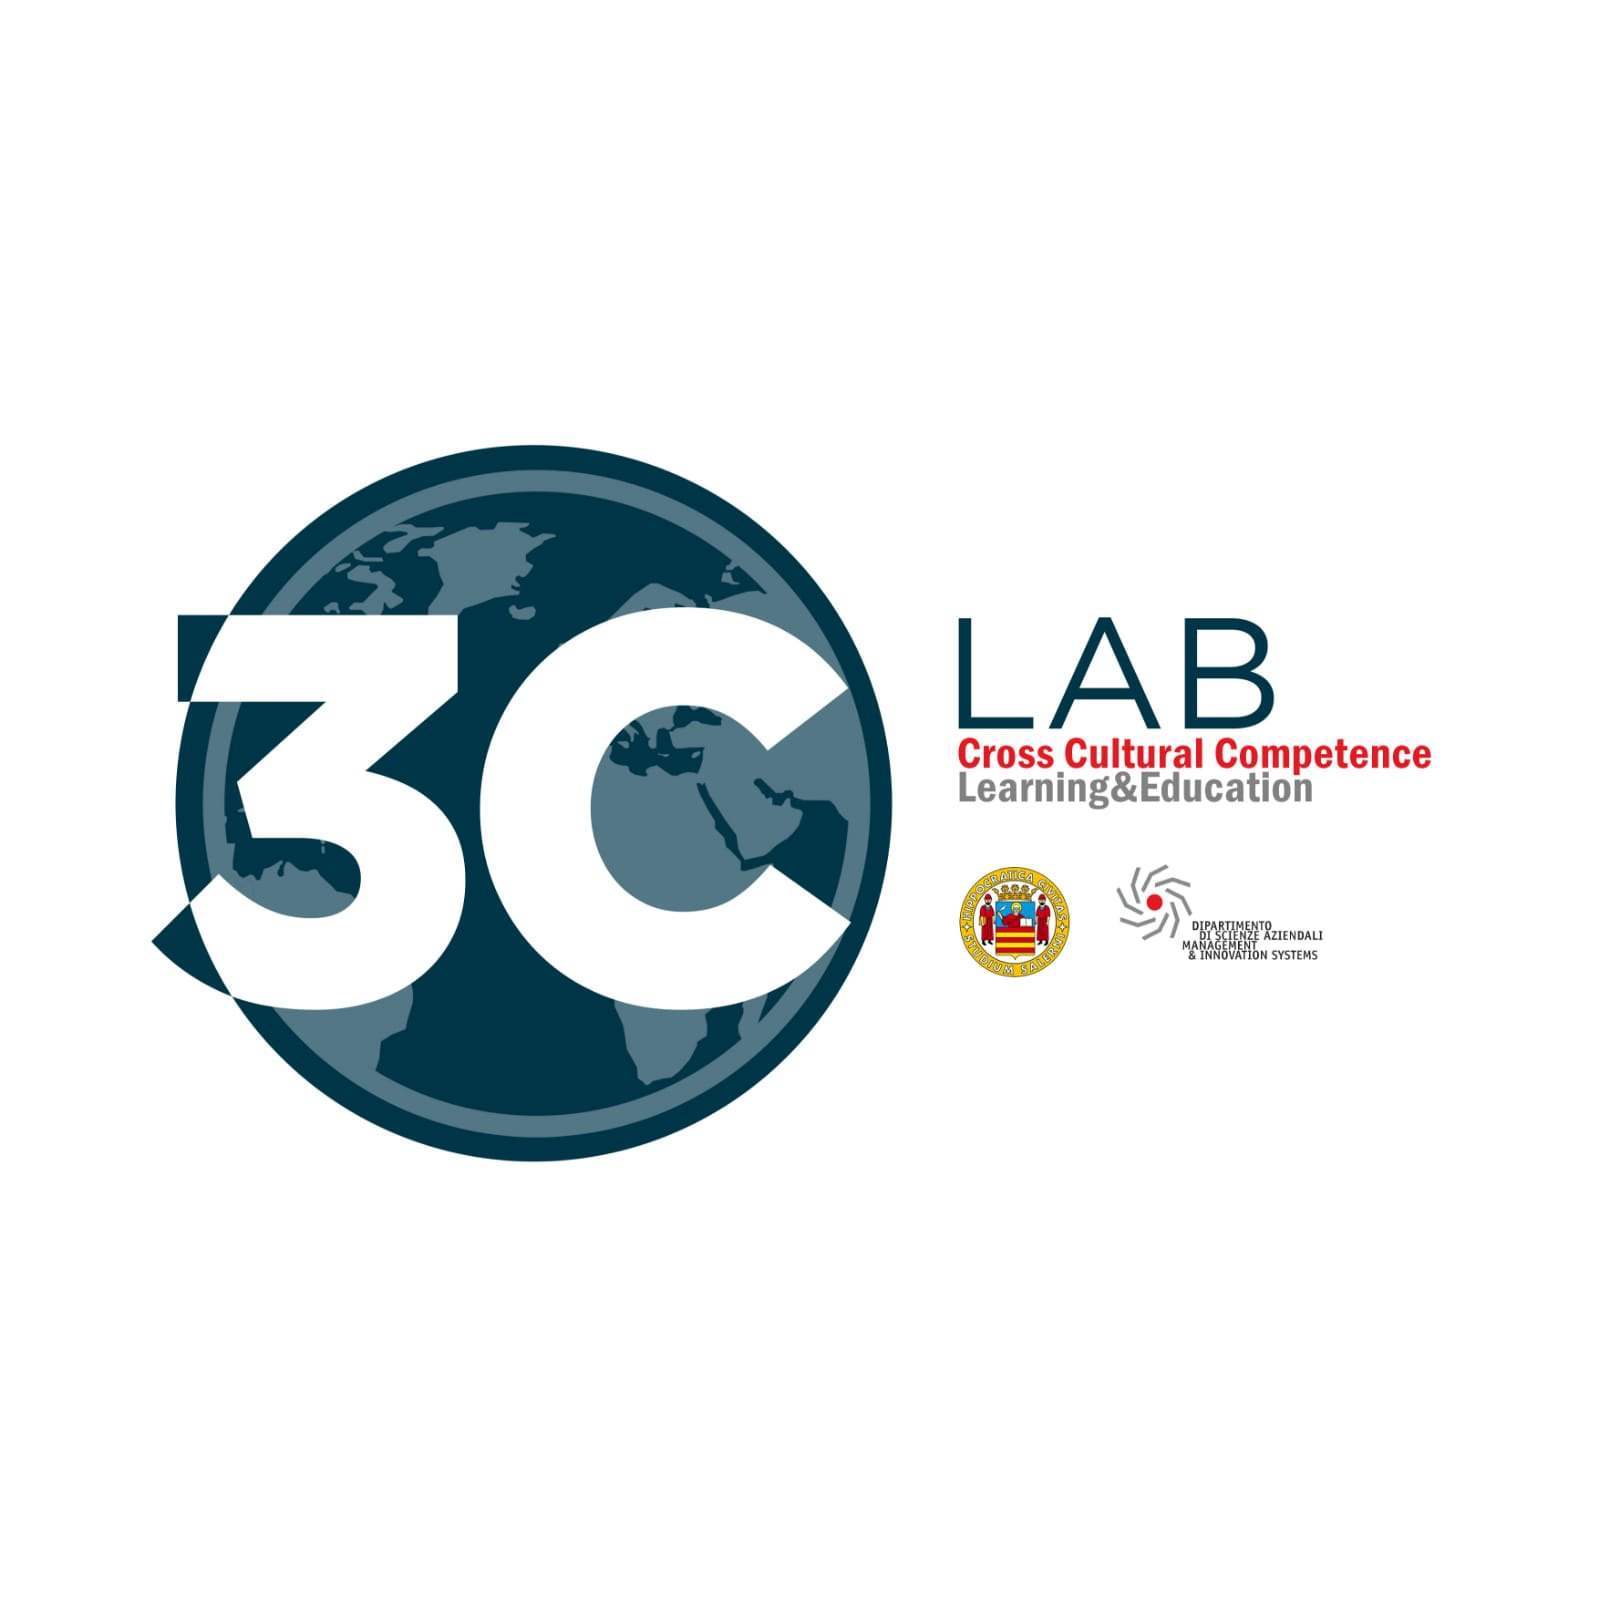 3C lab